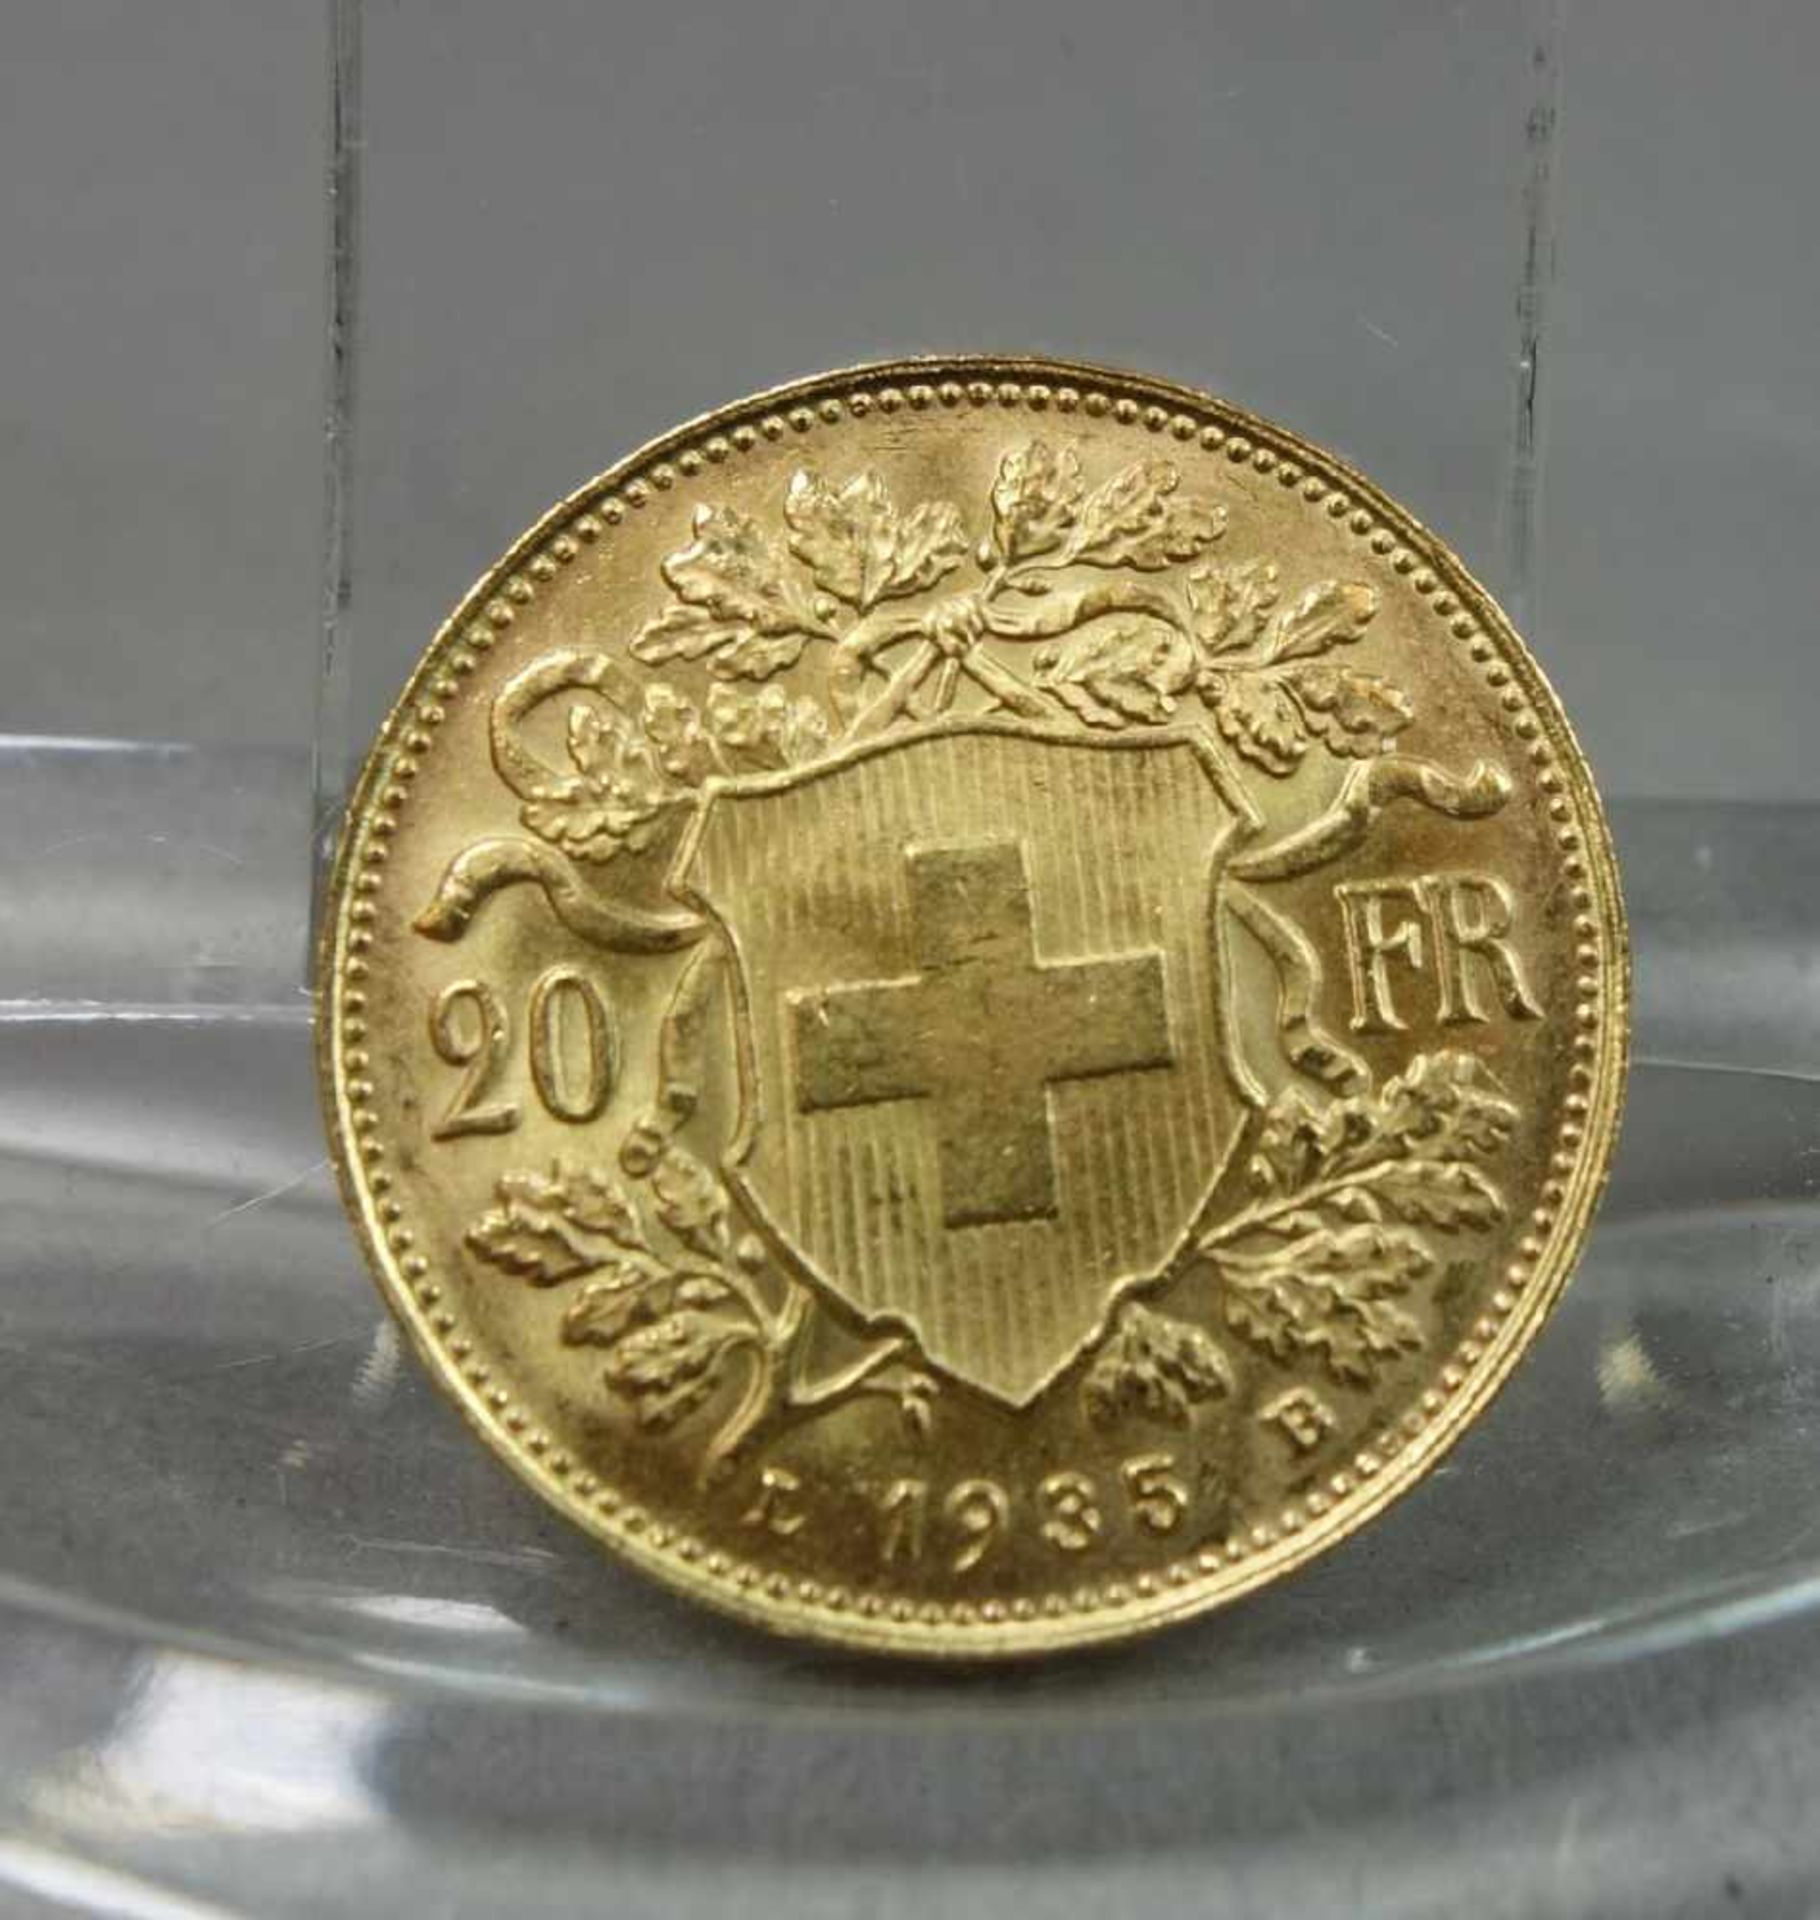 GOLDMÜNZE: 20 FRANKEN / gold coin, Schweiz, 1935, 6,4 Gramm, 900er Gold. Avers: Wappenschild der